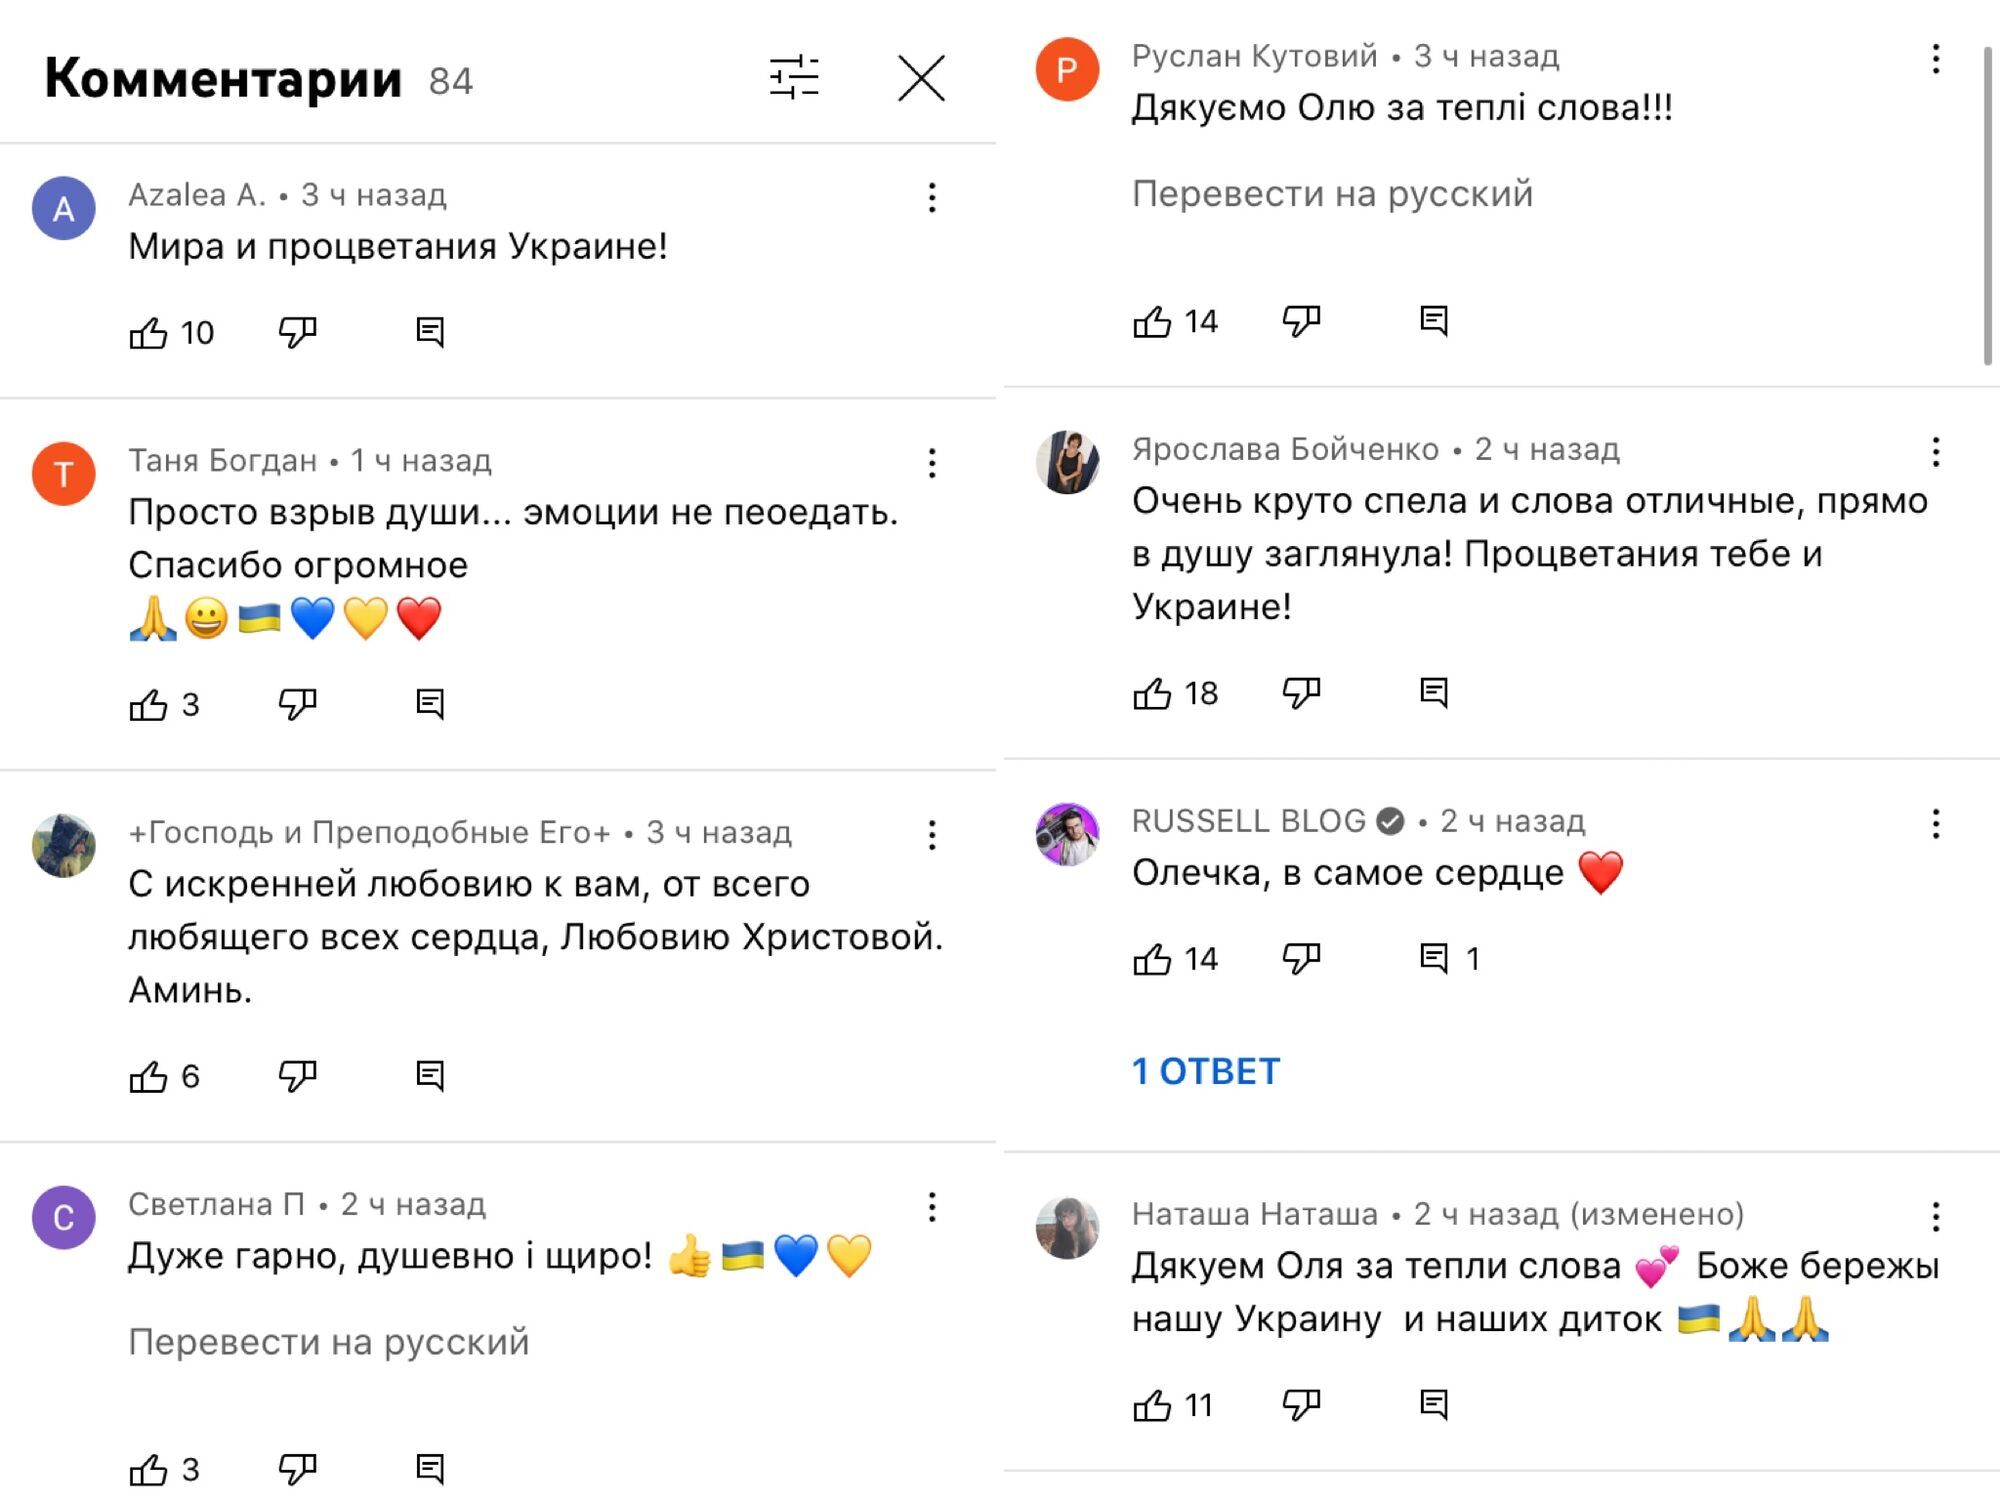 Комментарии под новым клипом Оли Поляковой